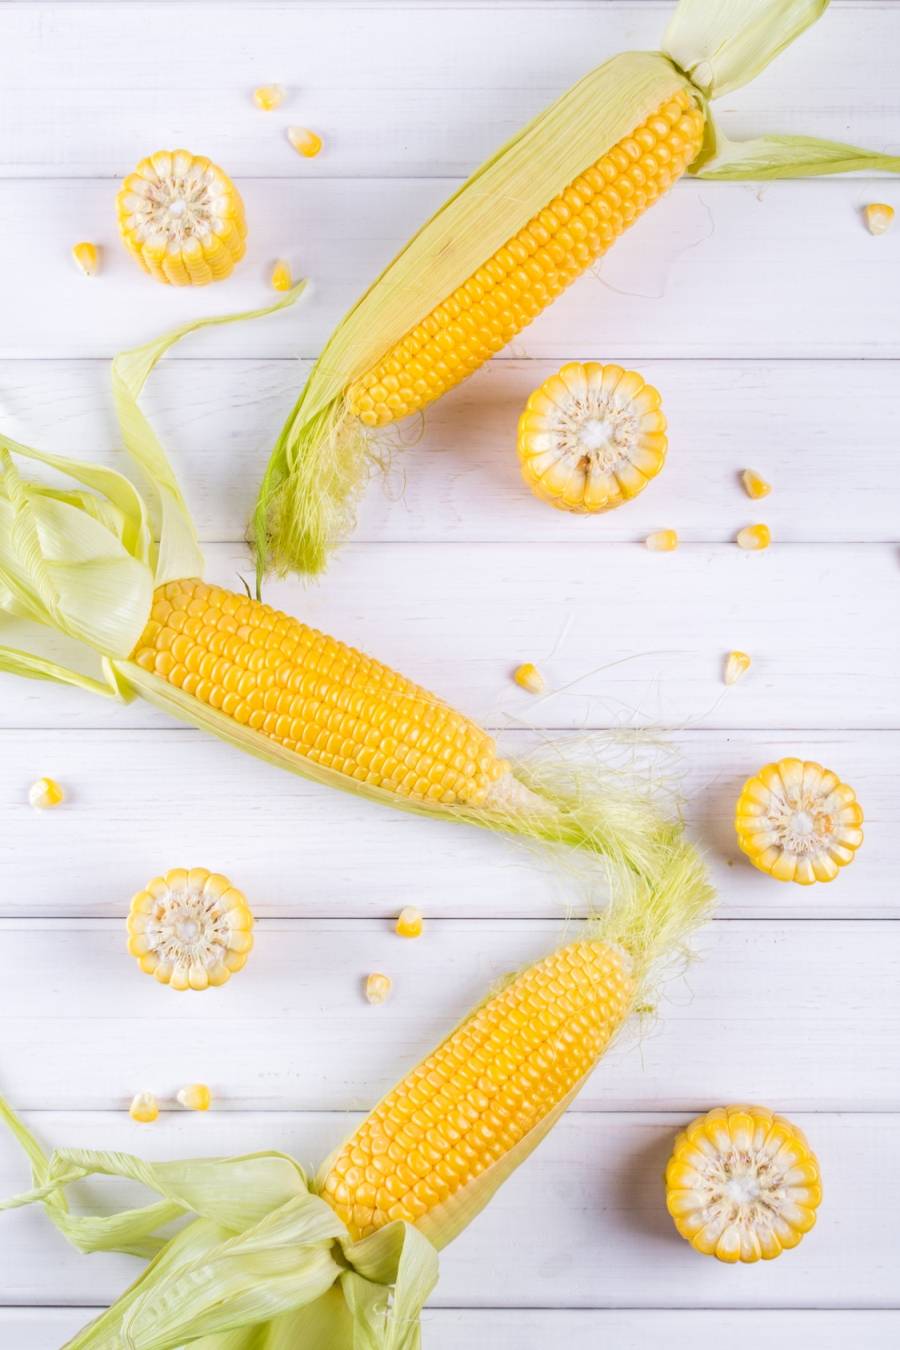 Kukurydza - znamiona kukurydzy - właściwości.